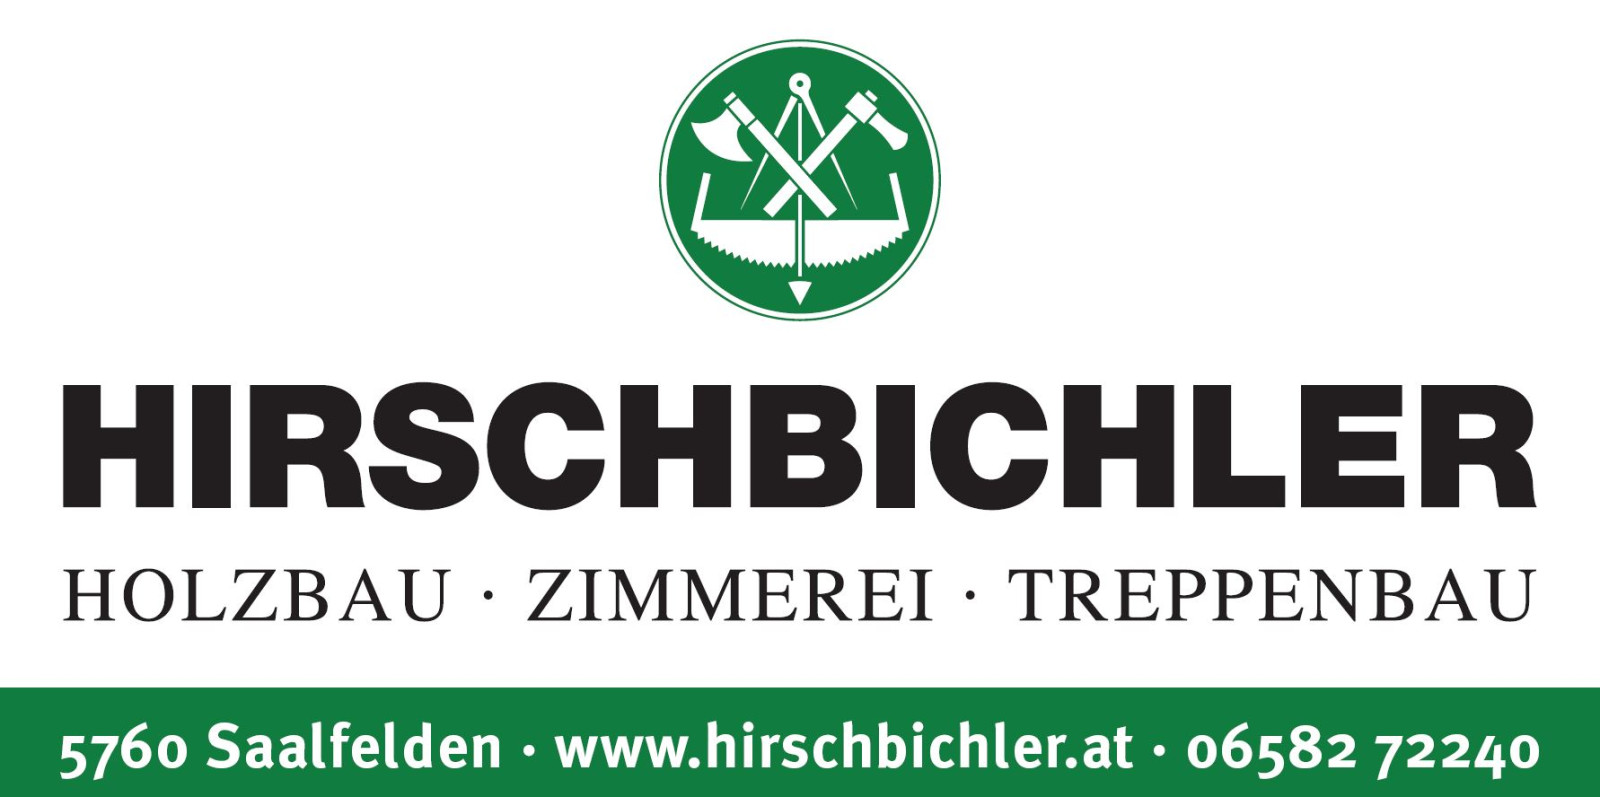 Hirschbichler.JPG